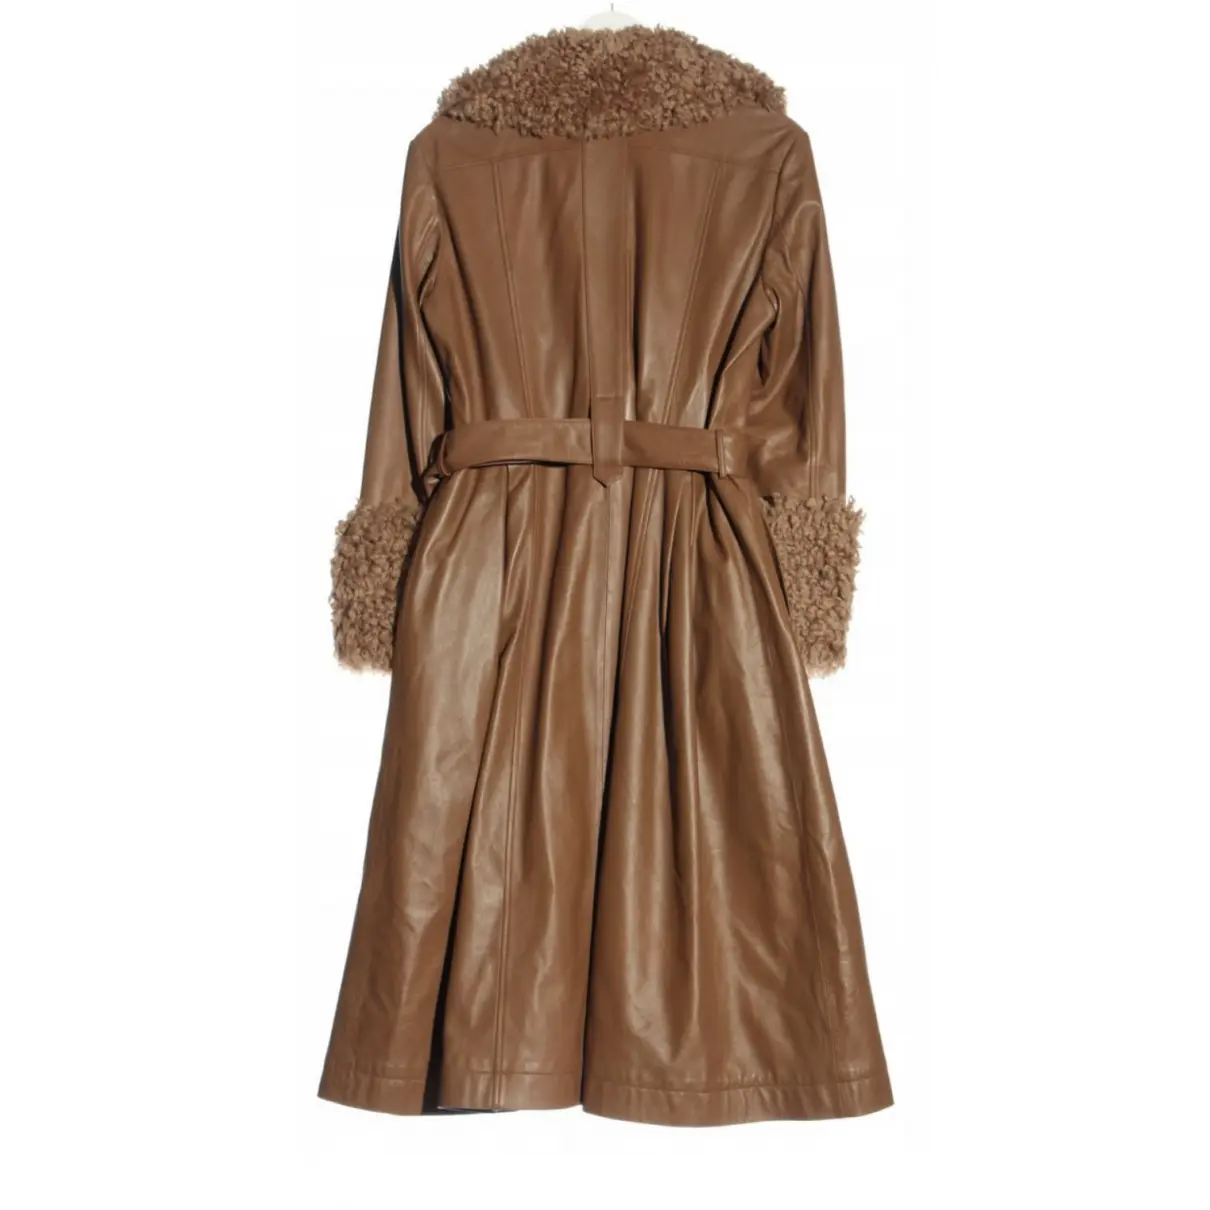 Buy Ducie Leather coat online